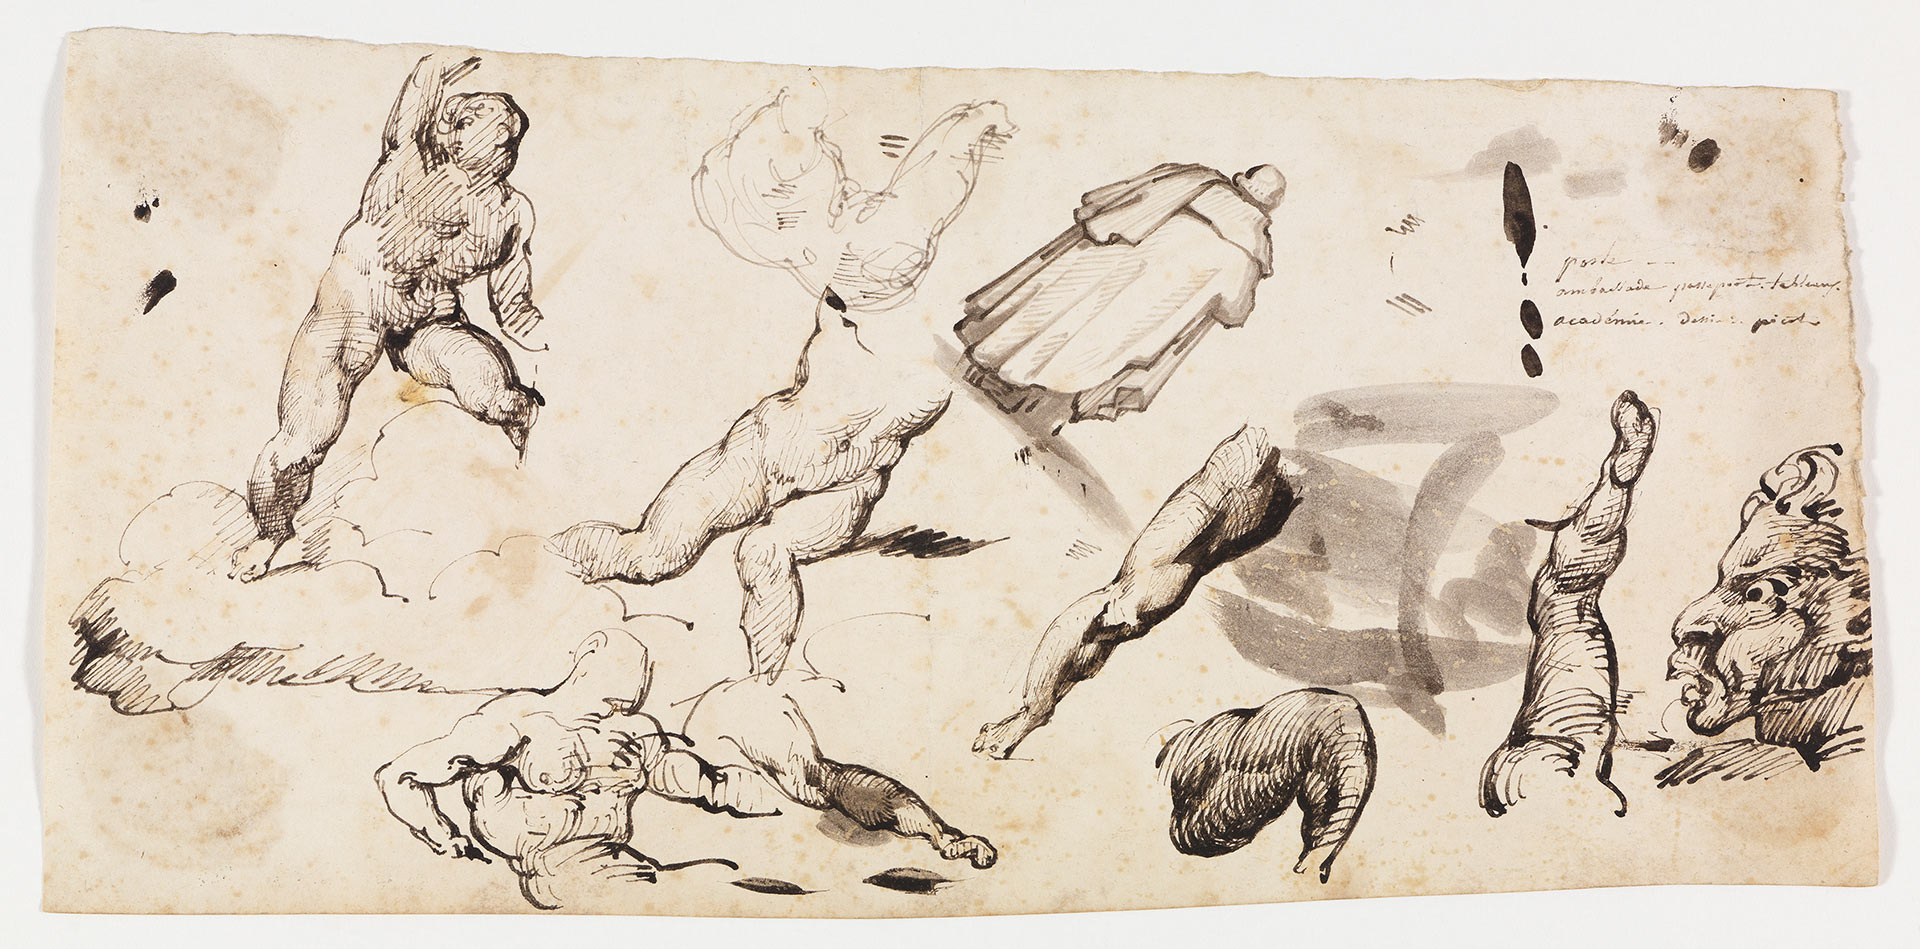 Auf der Abbildung des Studienblattes von Théodore Géricault sind verschiedene Skizzen und Studien von Körperteilen zu sehen.